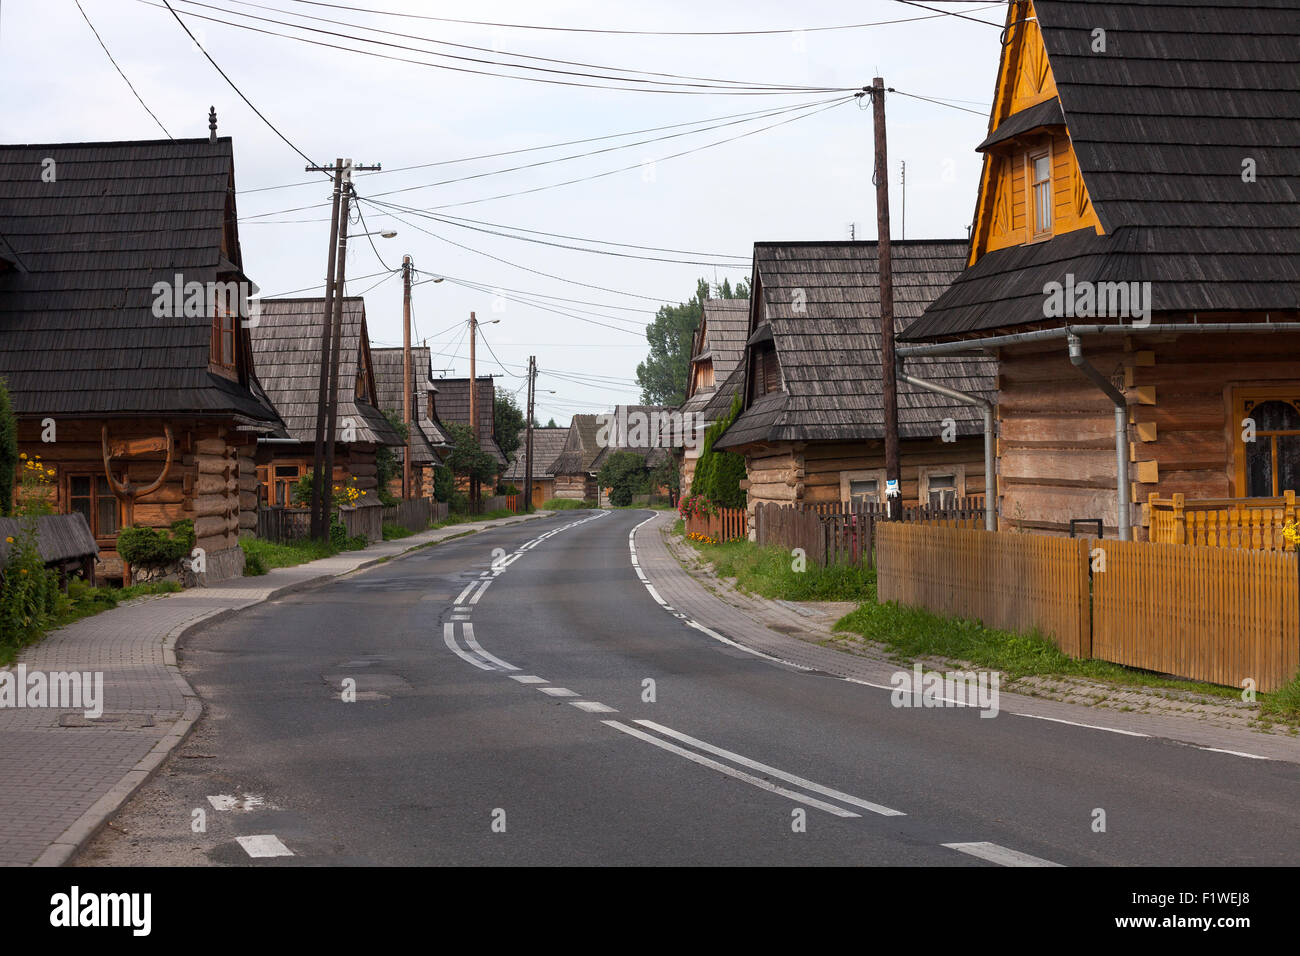 Rue avec maisons en bois traditionnelles highlanders à Chocholow village, Pologne Banque D'Images